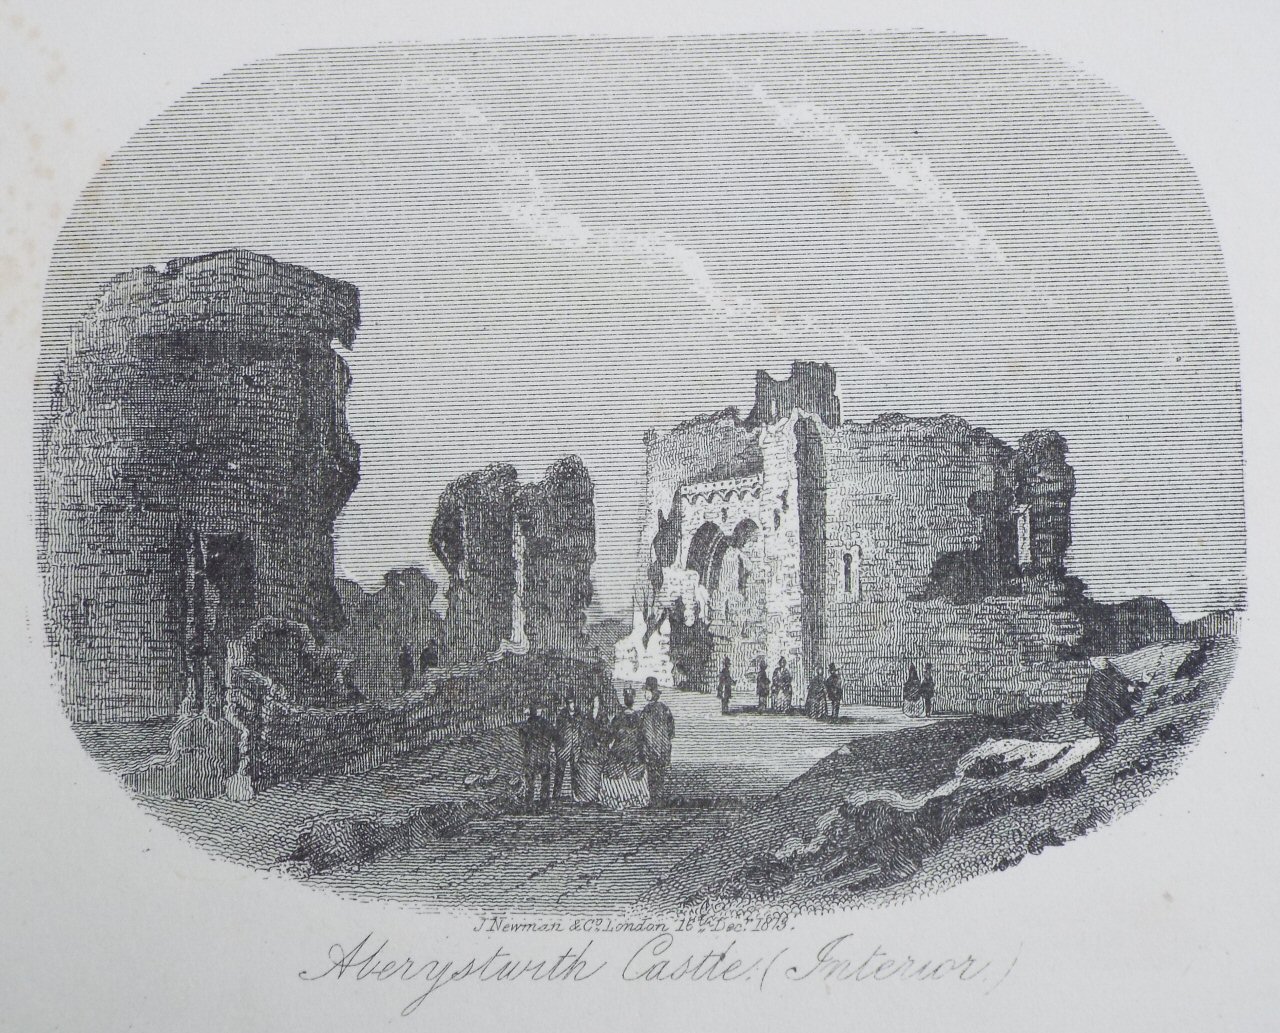 Steel Vignette - Aberystwyth Castle (Interior.) - Newman